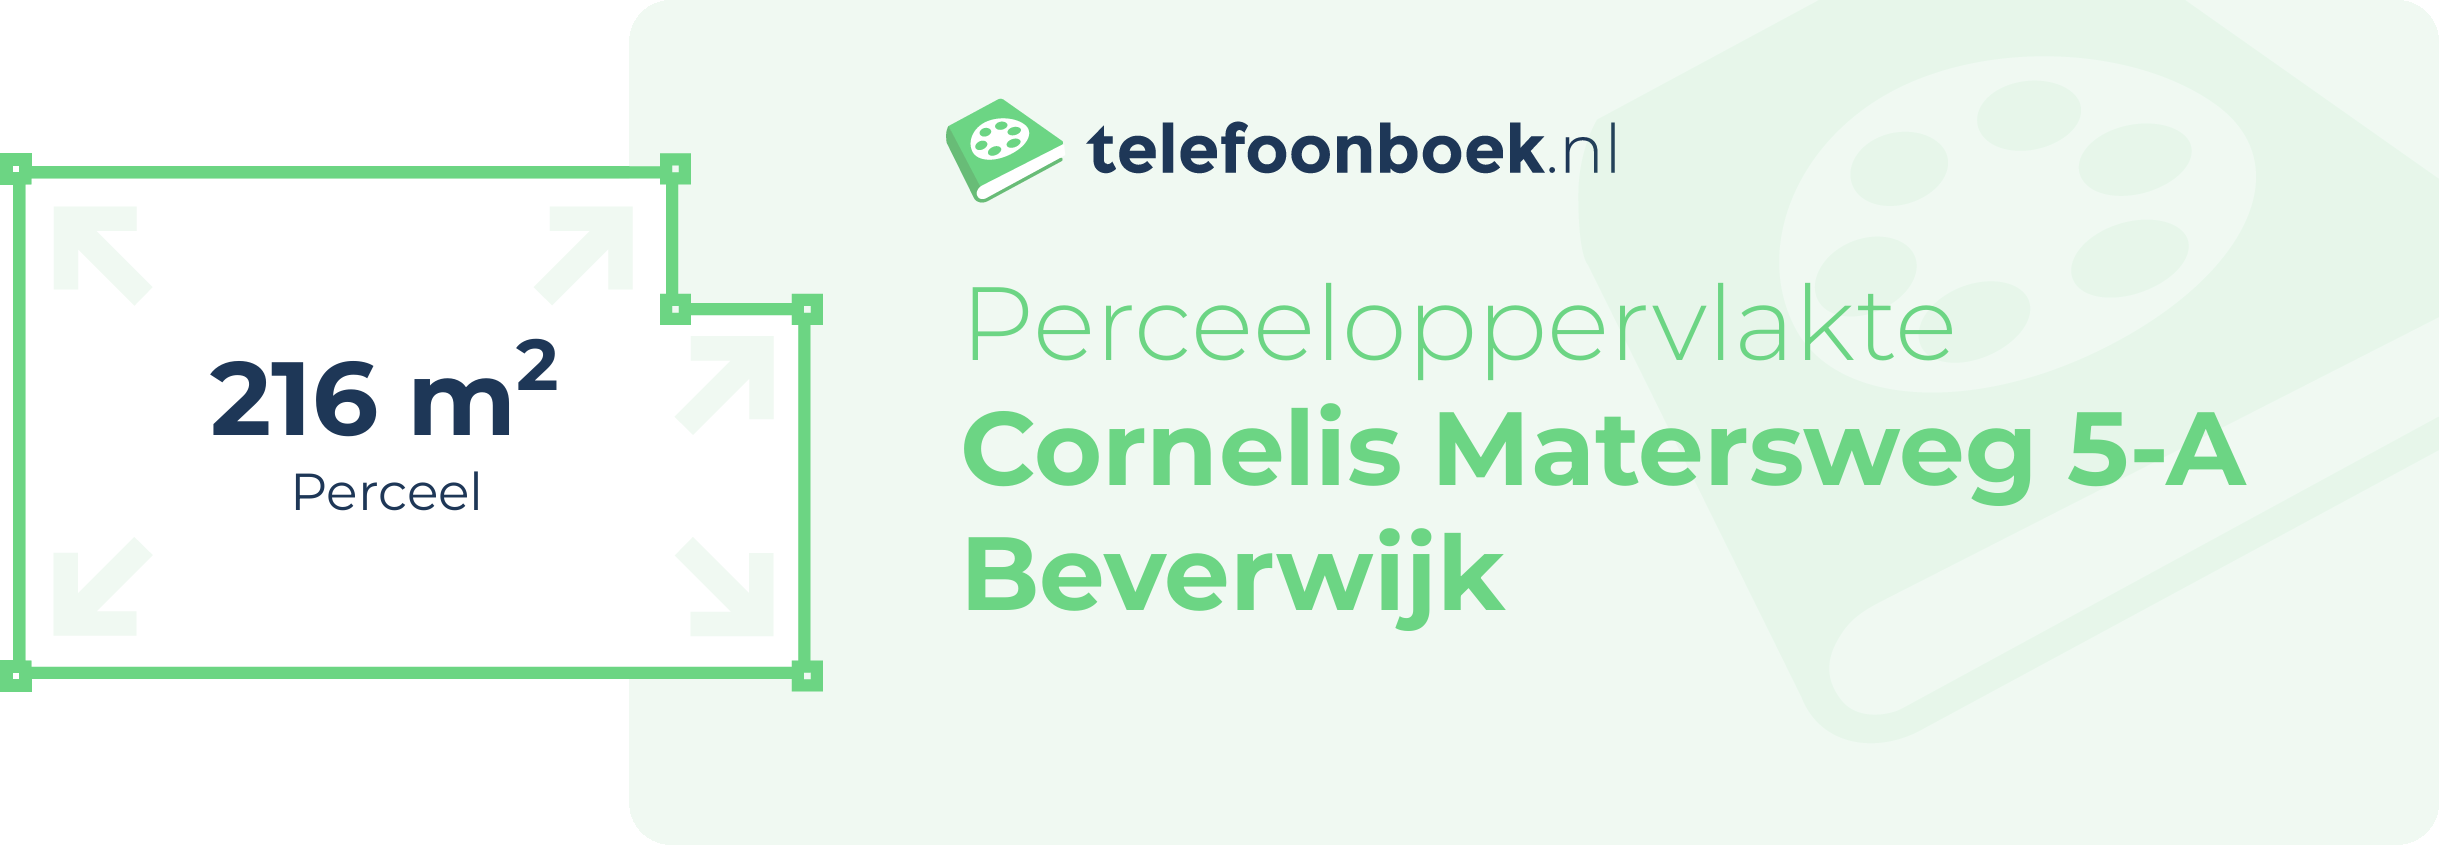 Perceeloppervlakte Cornelis Matersweg 5-A Beverwijk